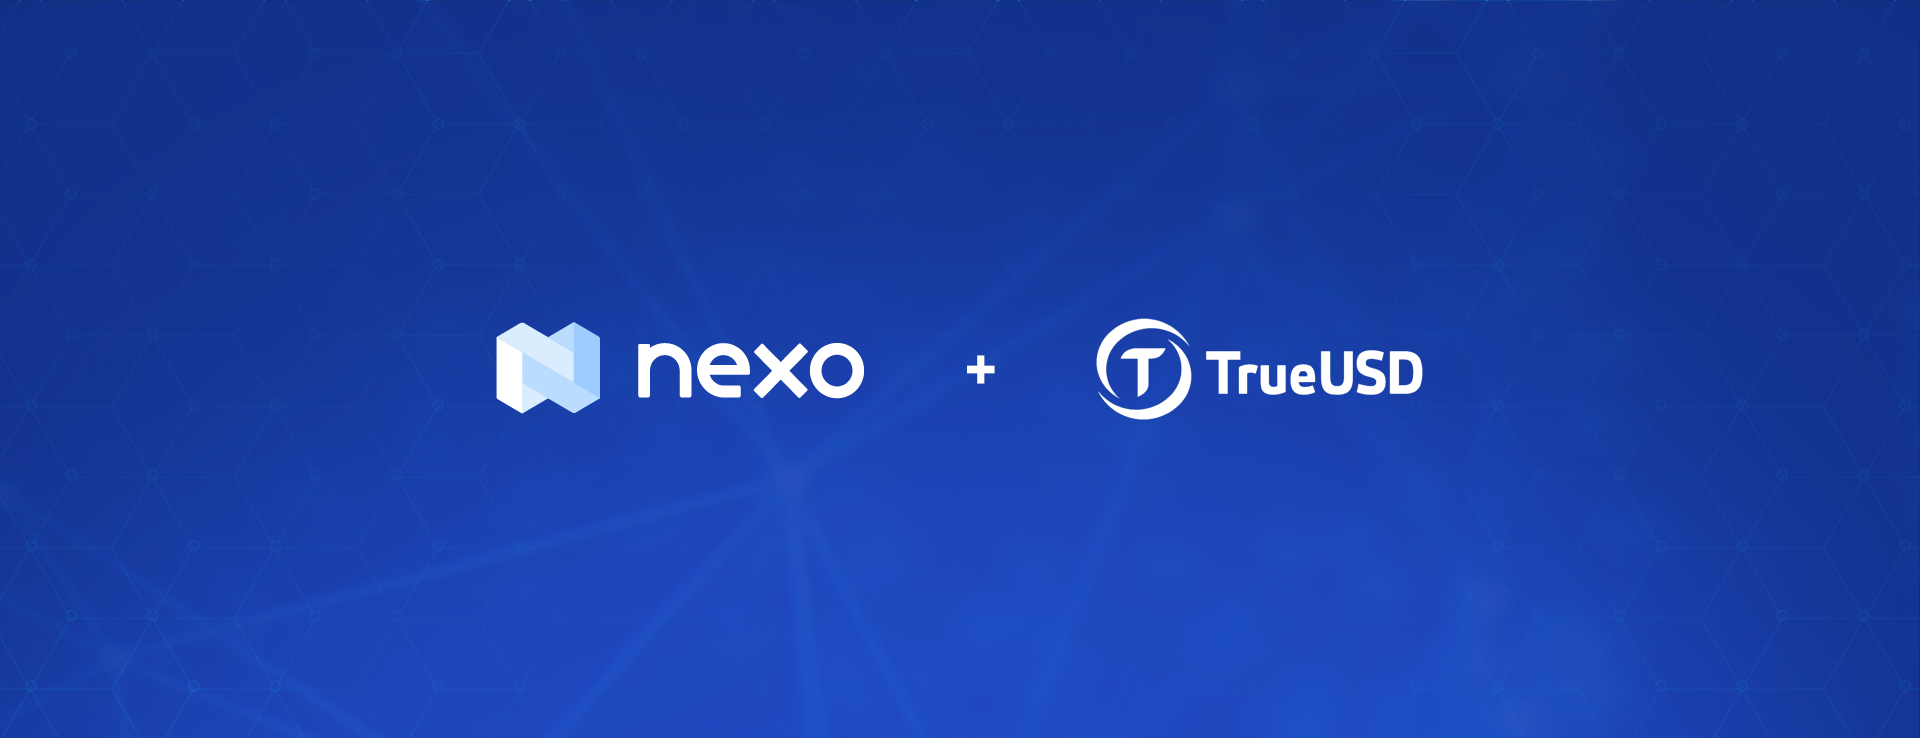 TrueUSD Selects Nexo as Its Official Lending Partner